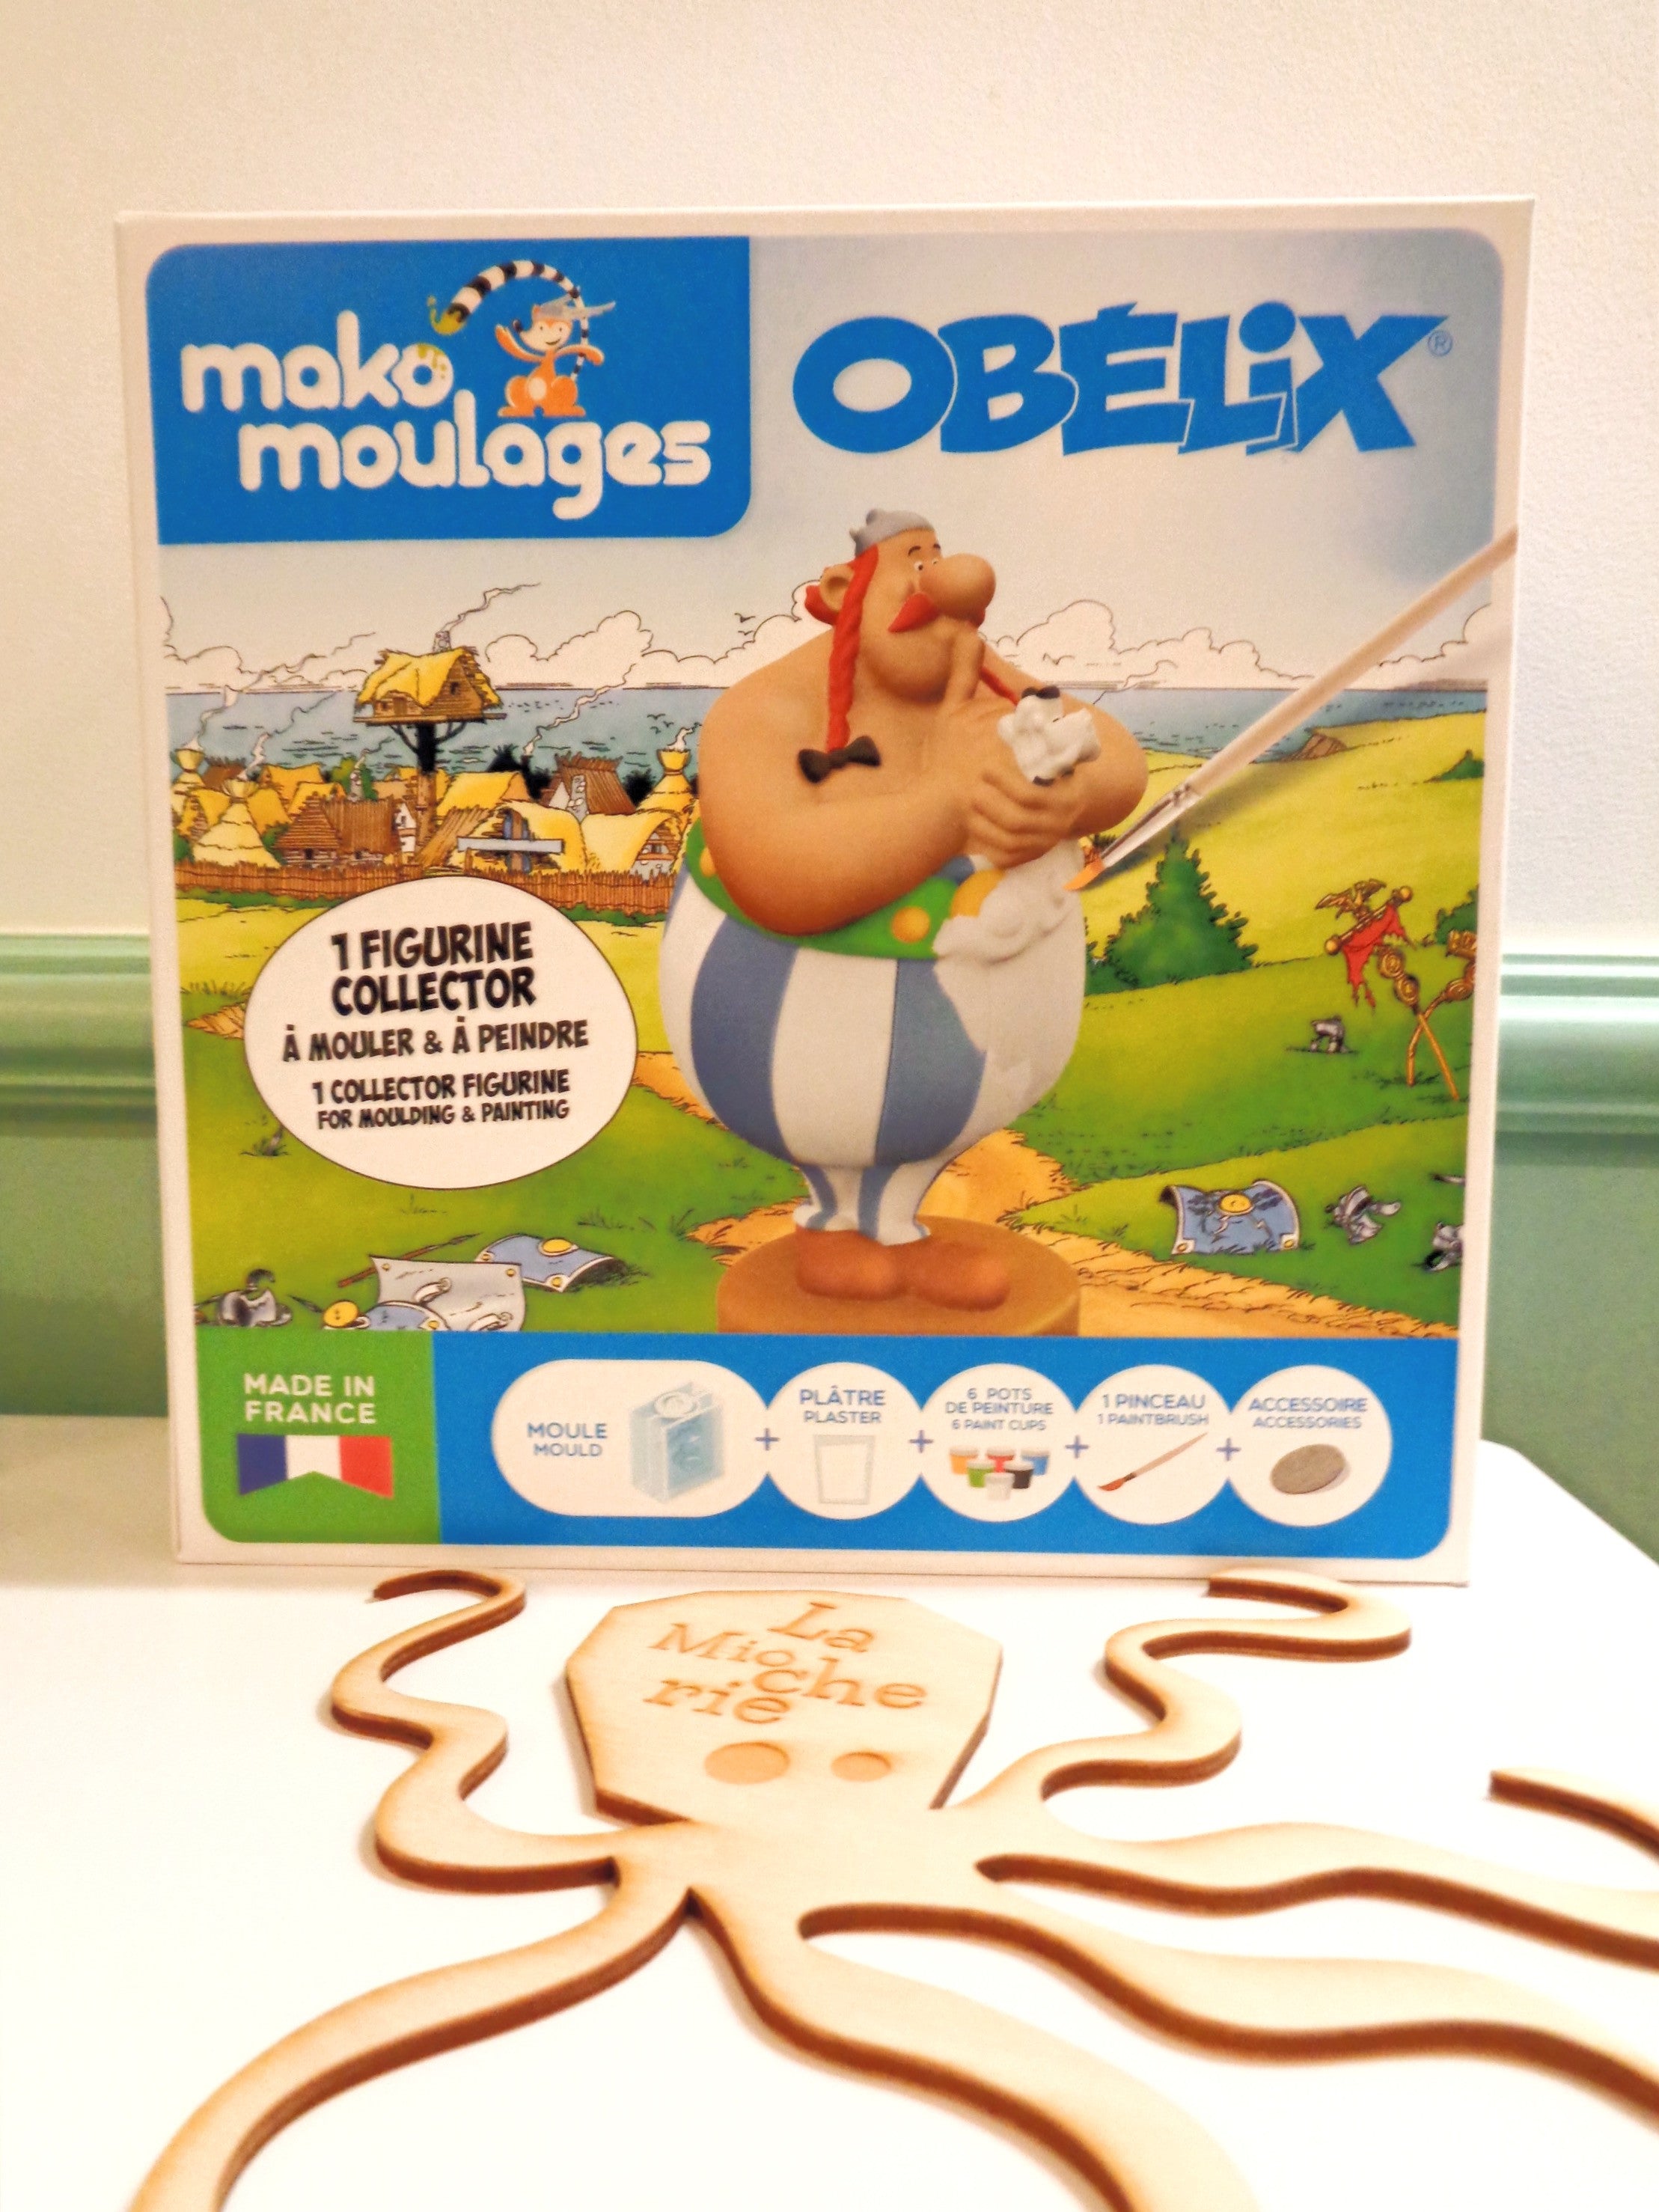 Obélix kit - Made in France - Mako Moulages